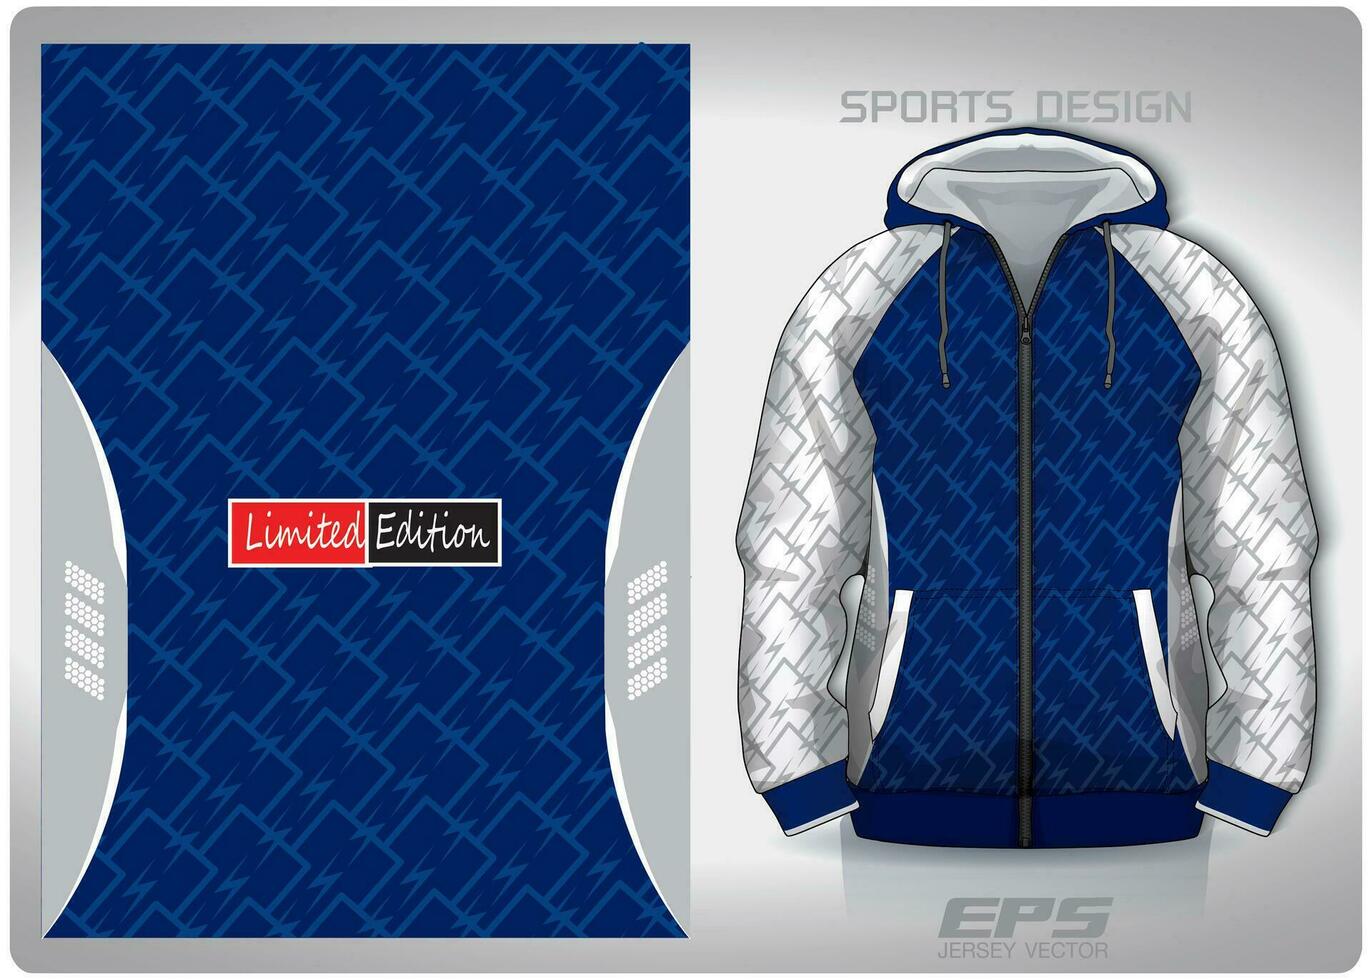 vector sport- overhemd achtergrond afbeelding.bliksem in een rij wit blauw patroon ontwerp, illustratie, textiel achtergrond voor sport- lang mouw capuchon, Jersey capuchon